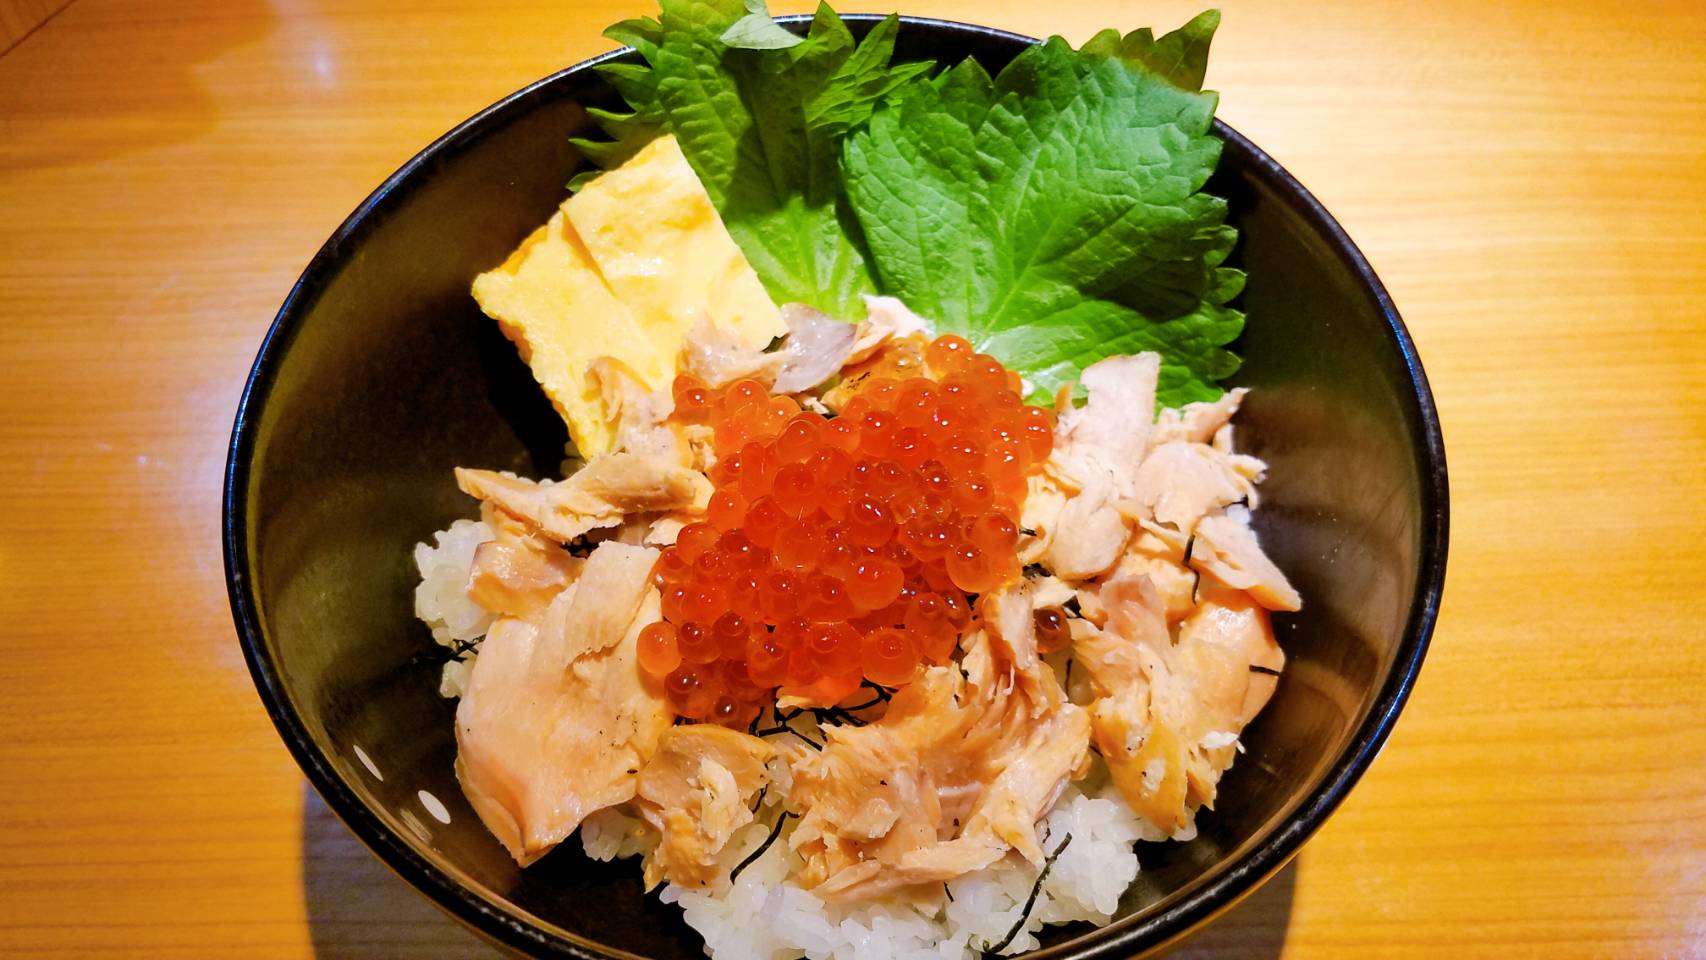 鮭とイクラの親子丼 海の恵み 食の底力 Japan 公式レシピサイト